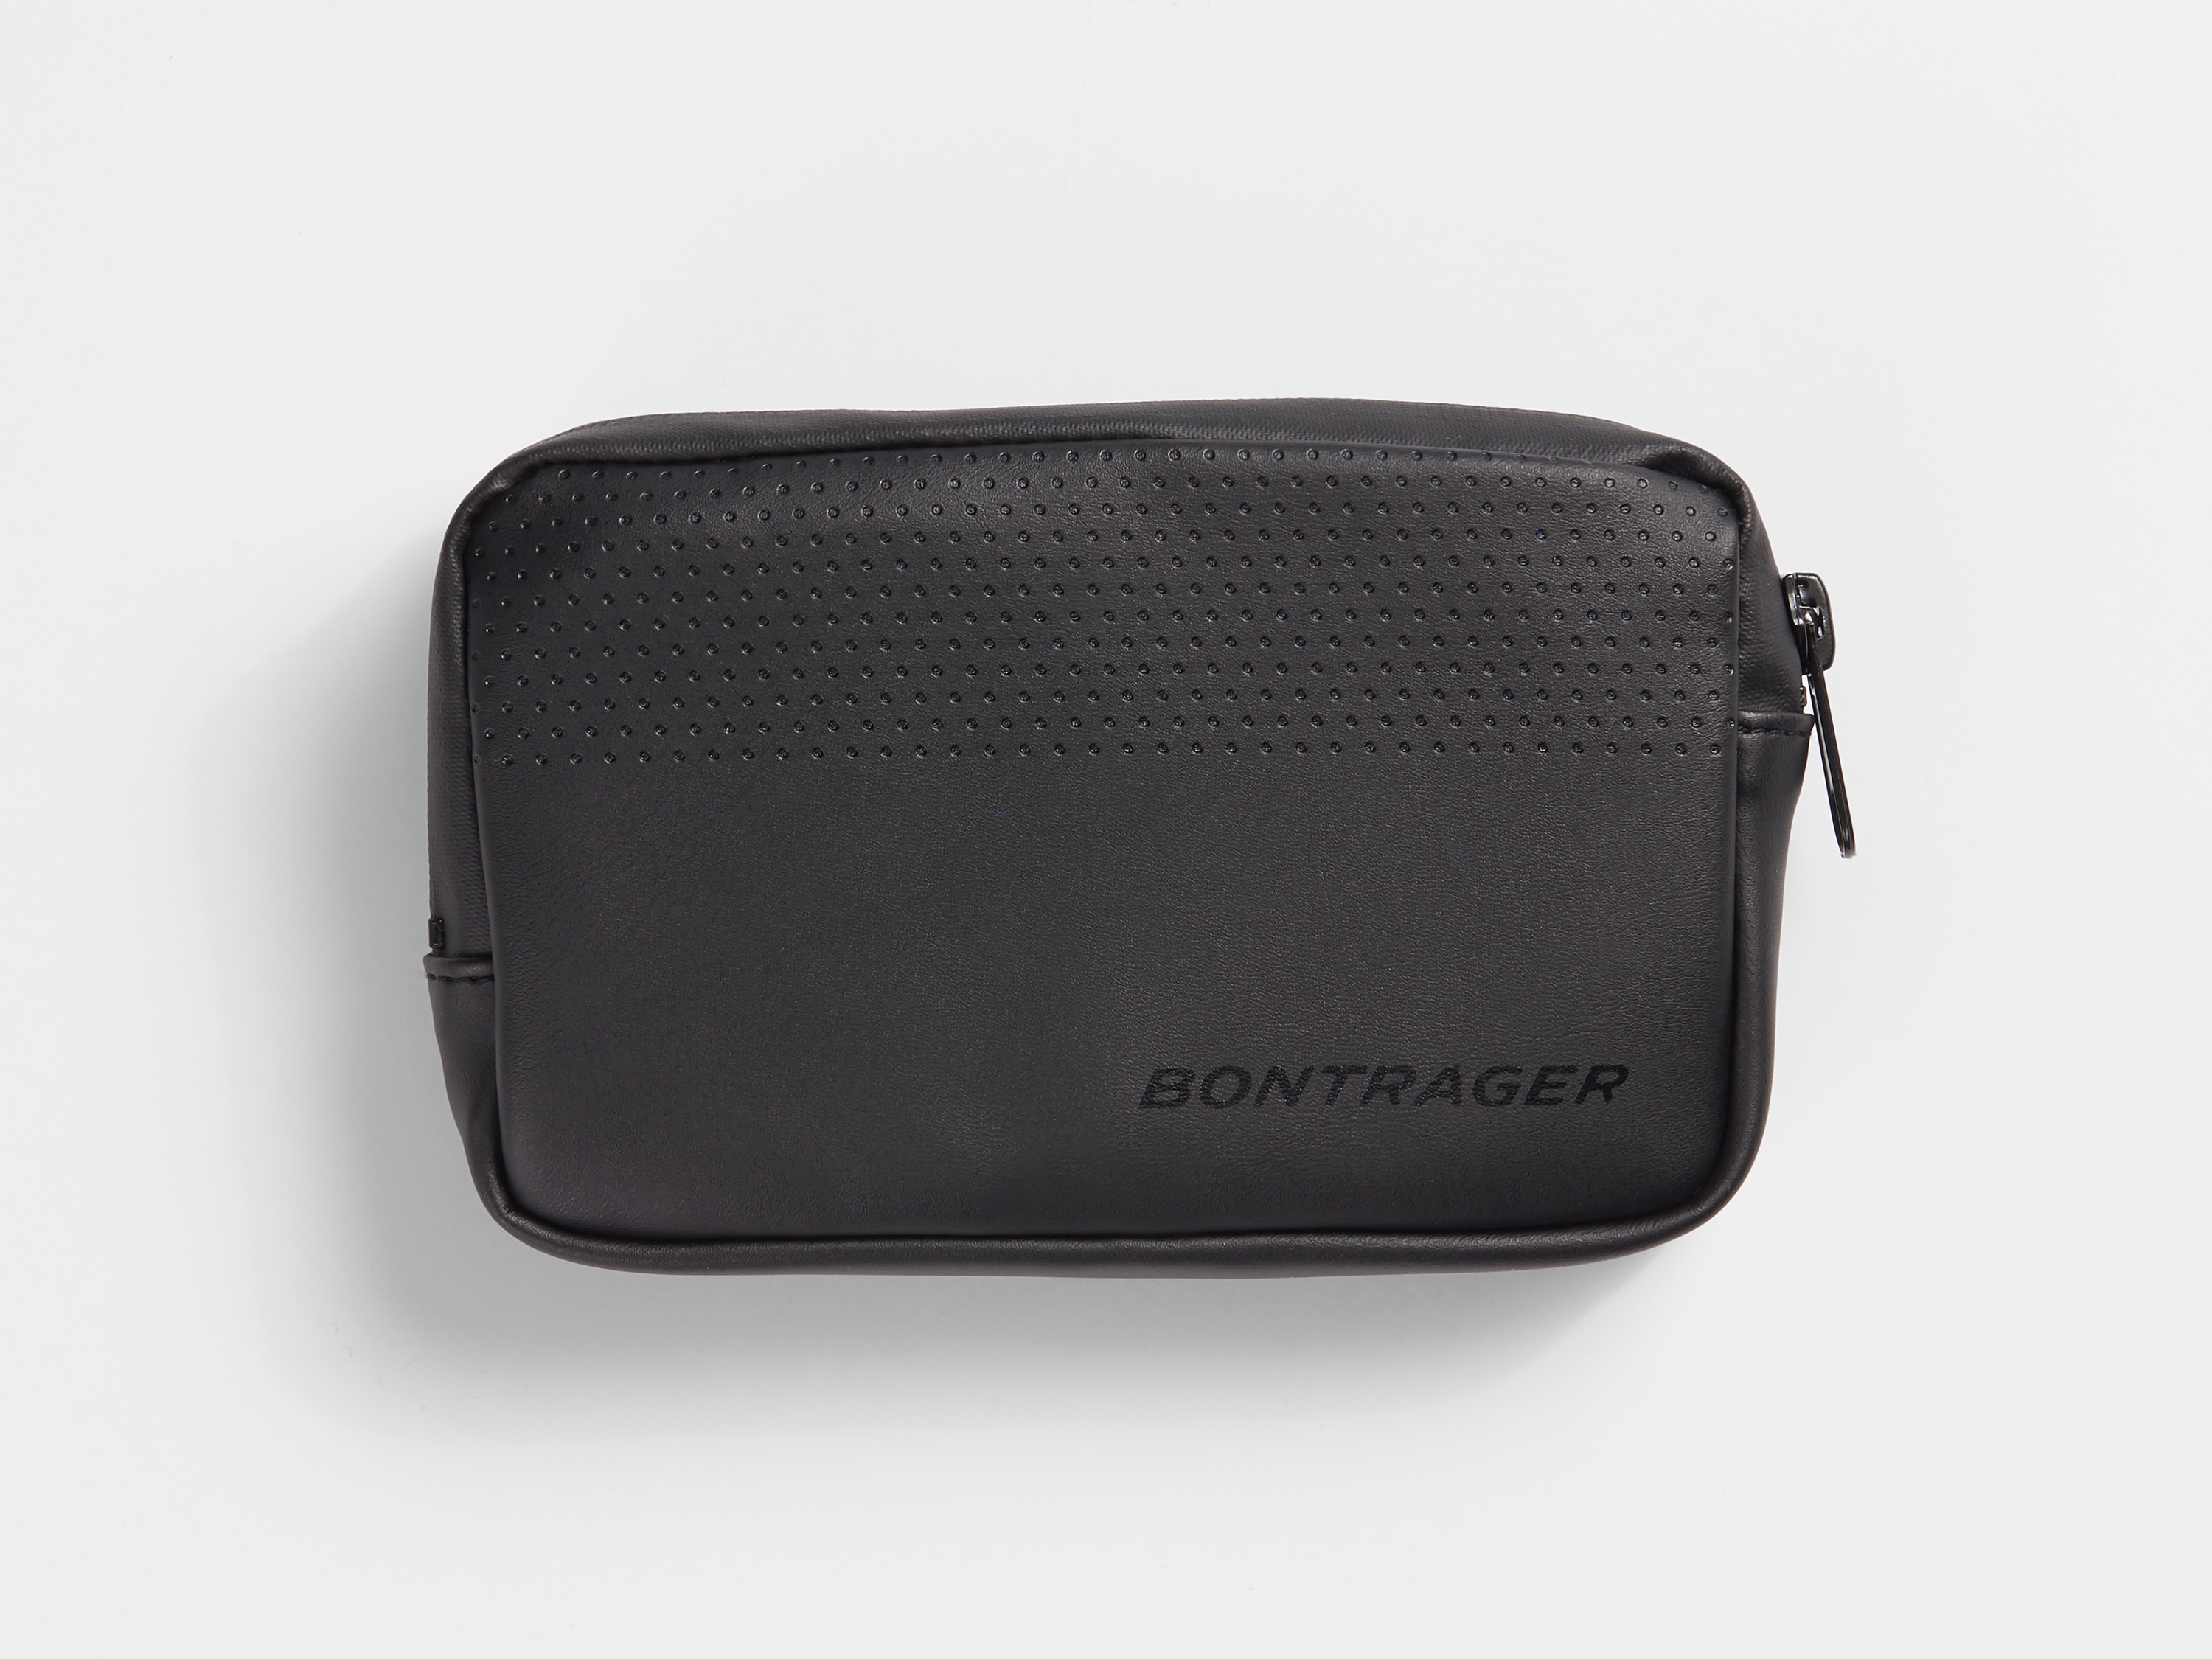 bontrager bits internal frame storage bag